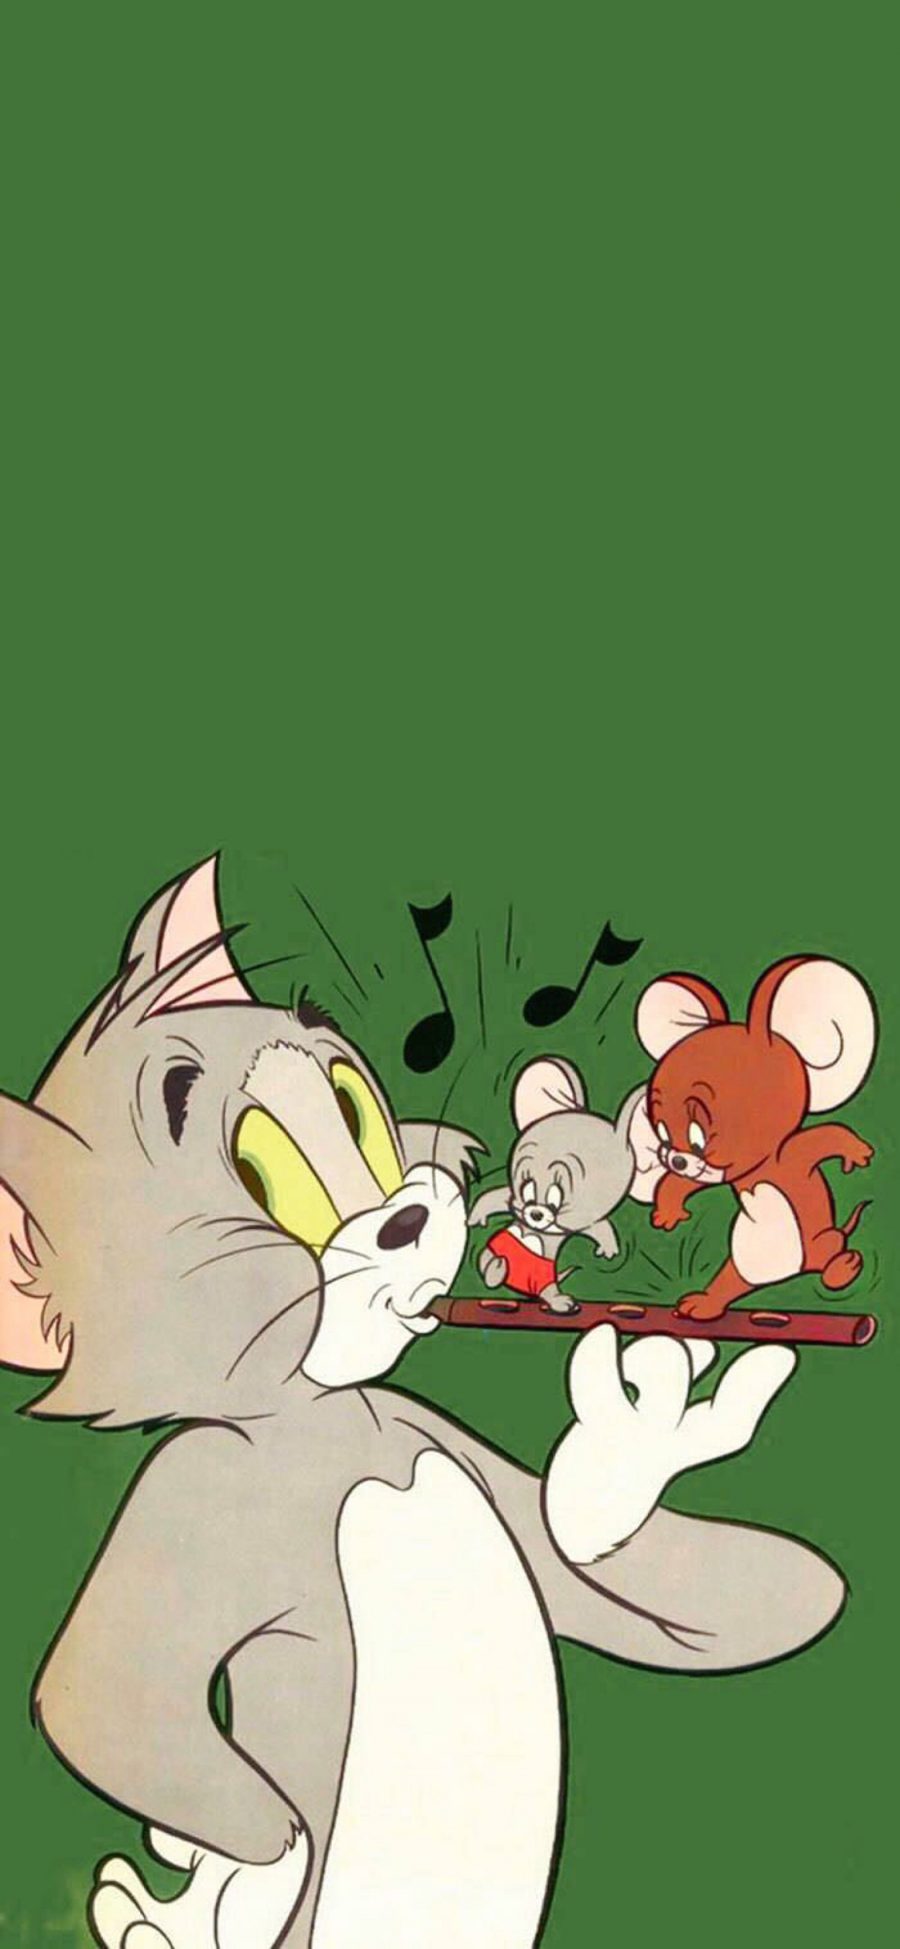 [2436×1125]美国 动画 猫和老鼠 Tom Jerry 苹果手机动漫壁纸图片